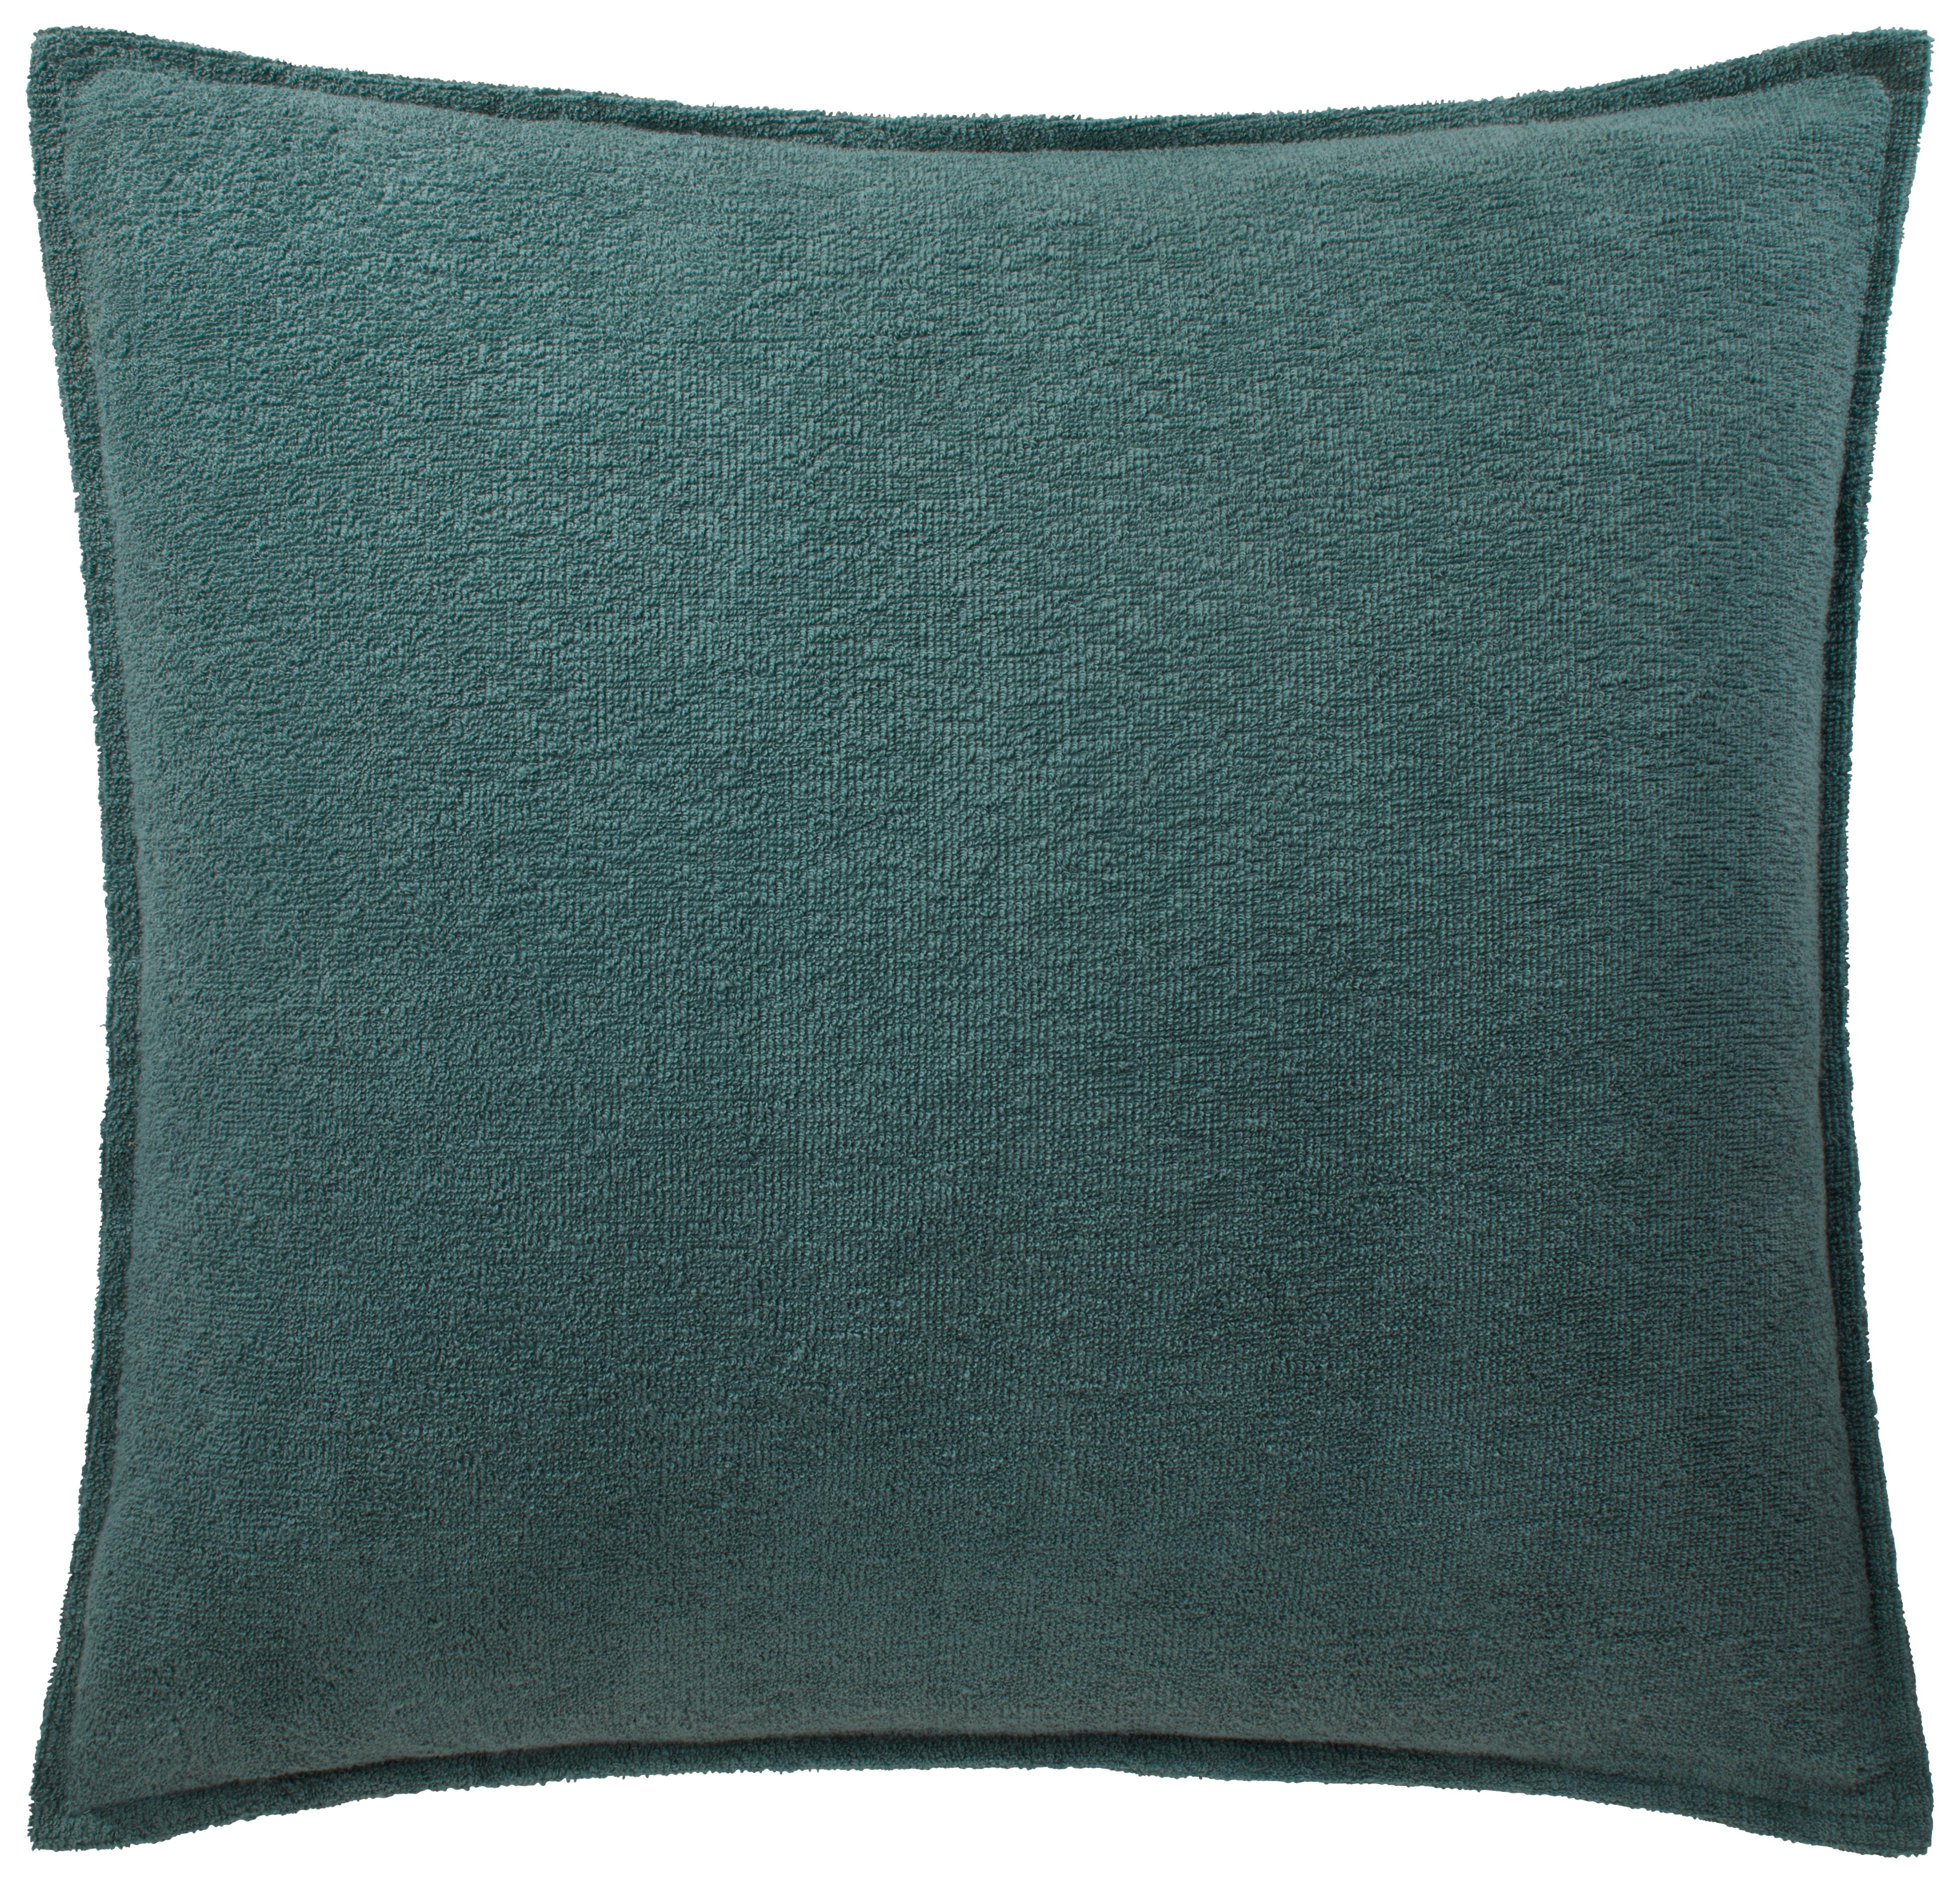 Okrasna Blazina Lotte - modra, Konvencionalno, tekstil (45/45cm) - Modern Living